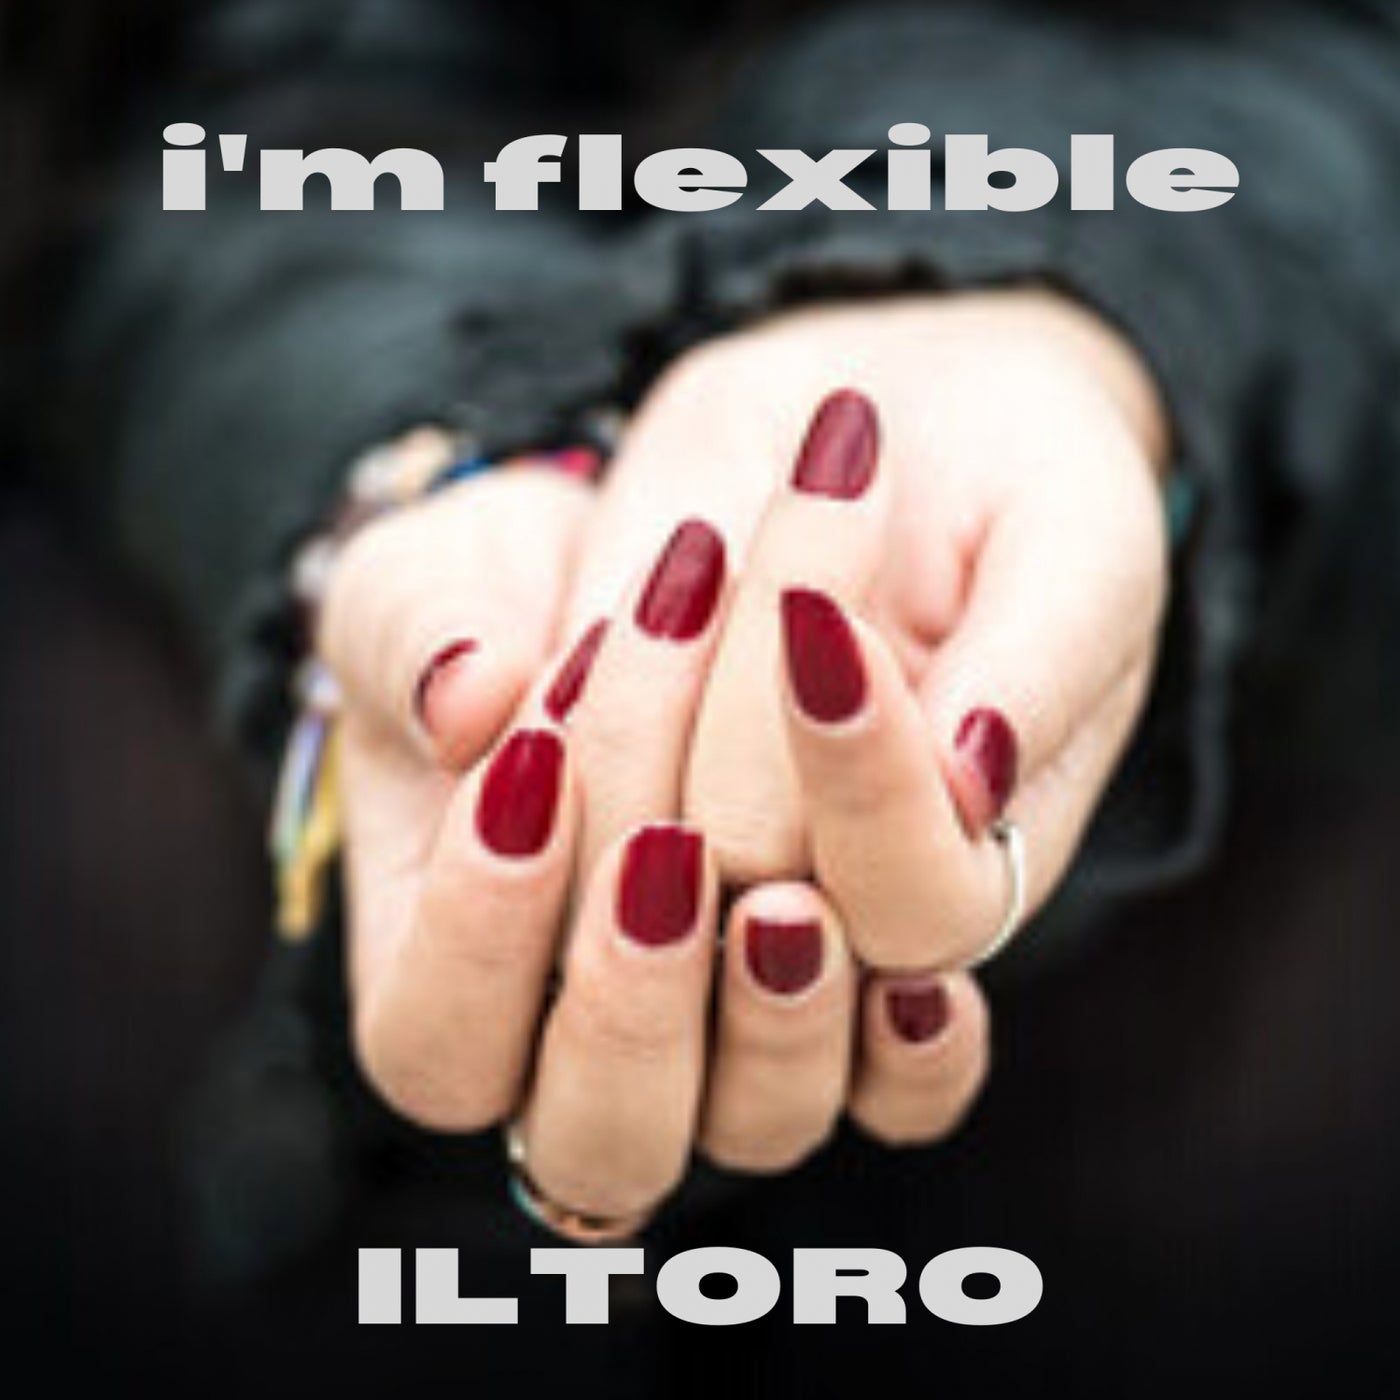 I'm flexible